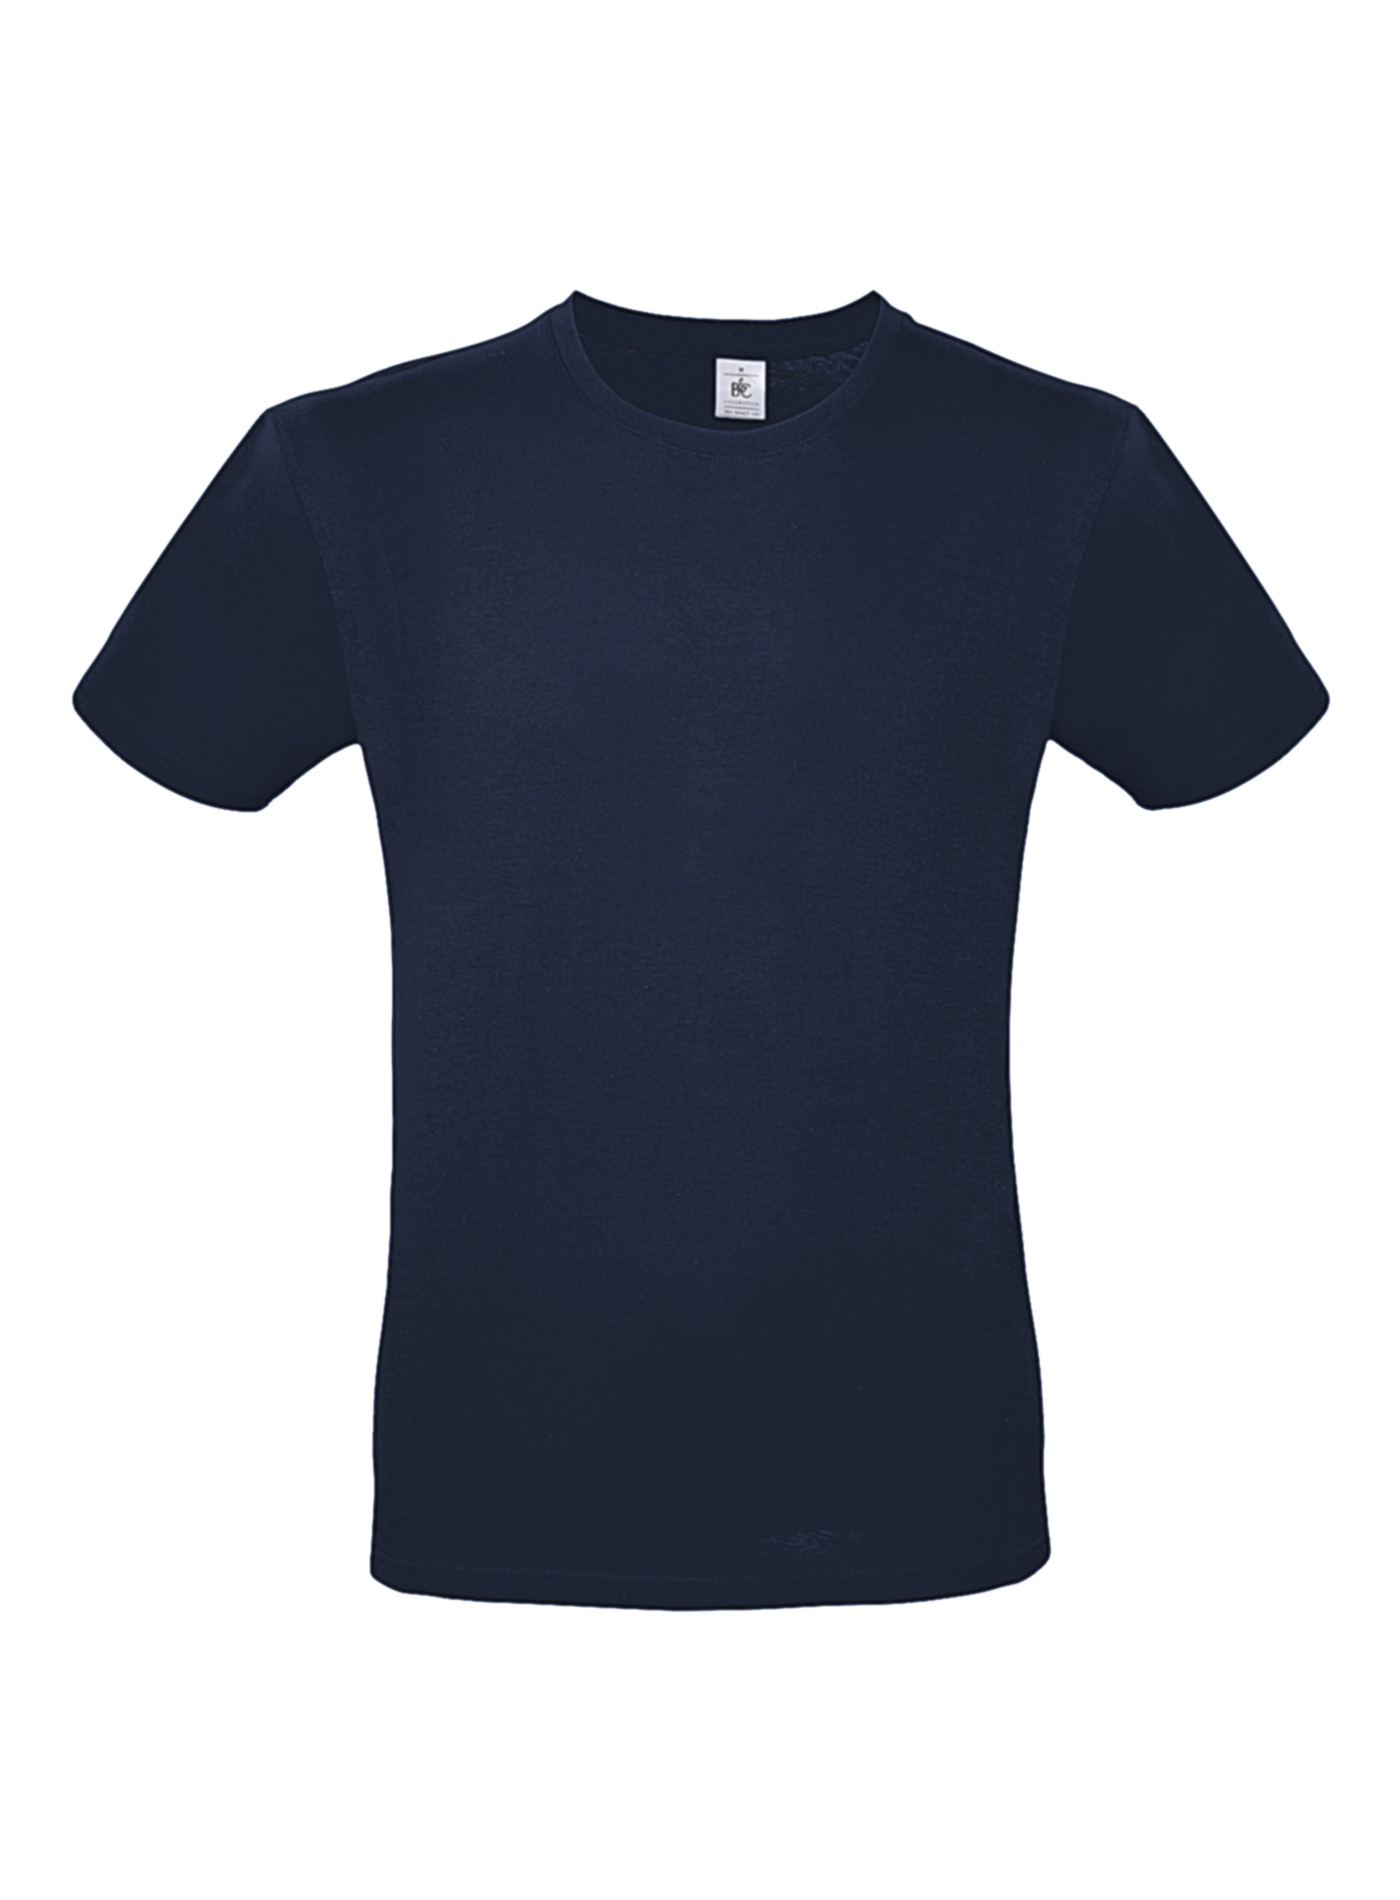 Pánské tričko B&C - Námořní modrá XXL